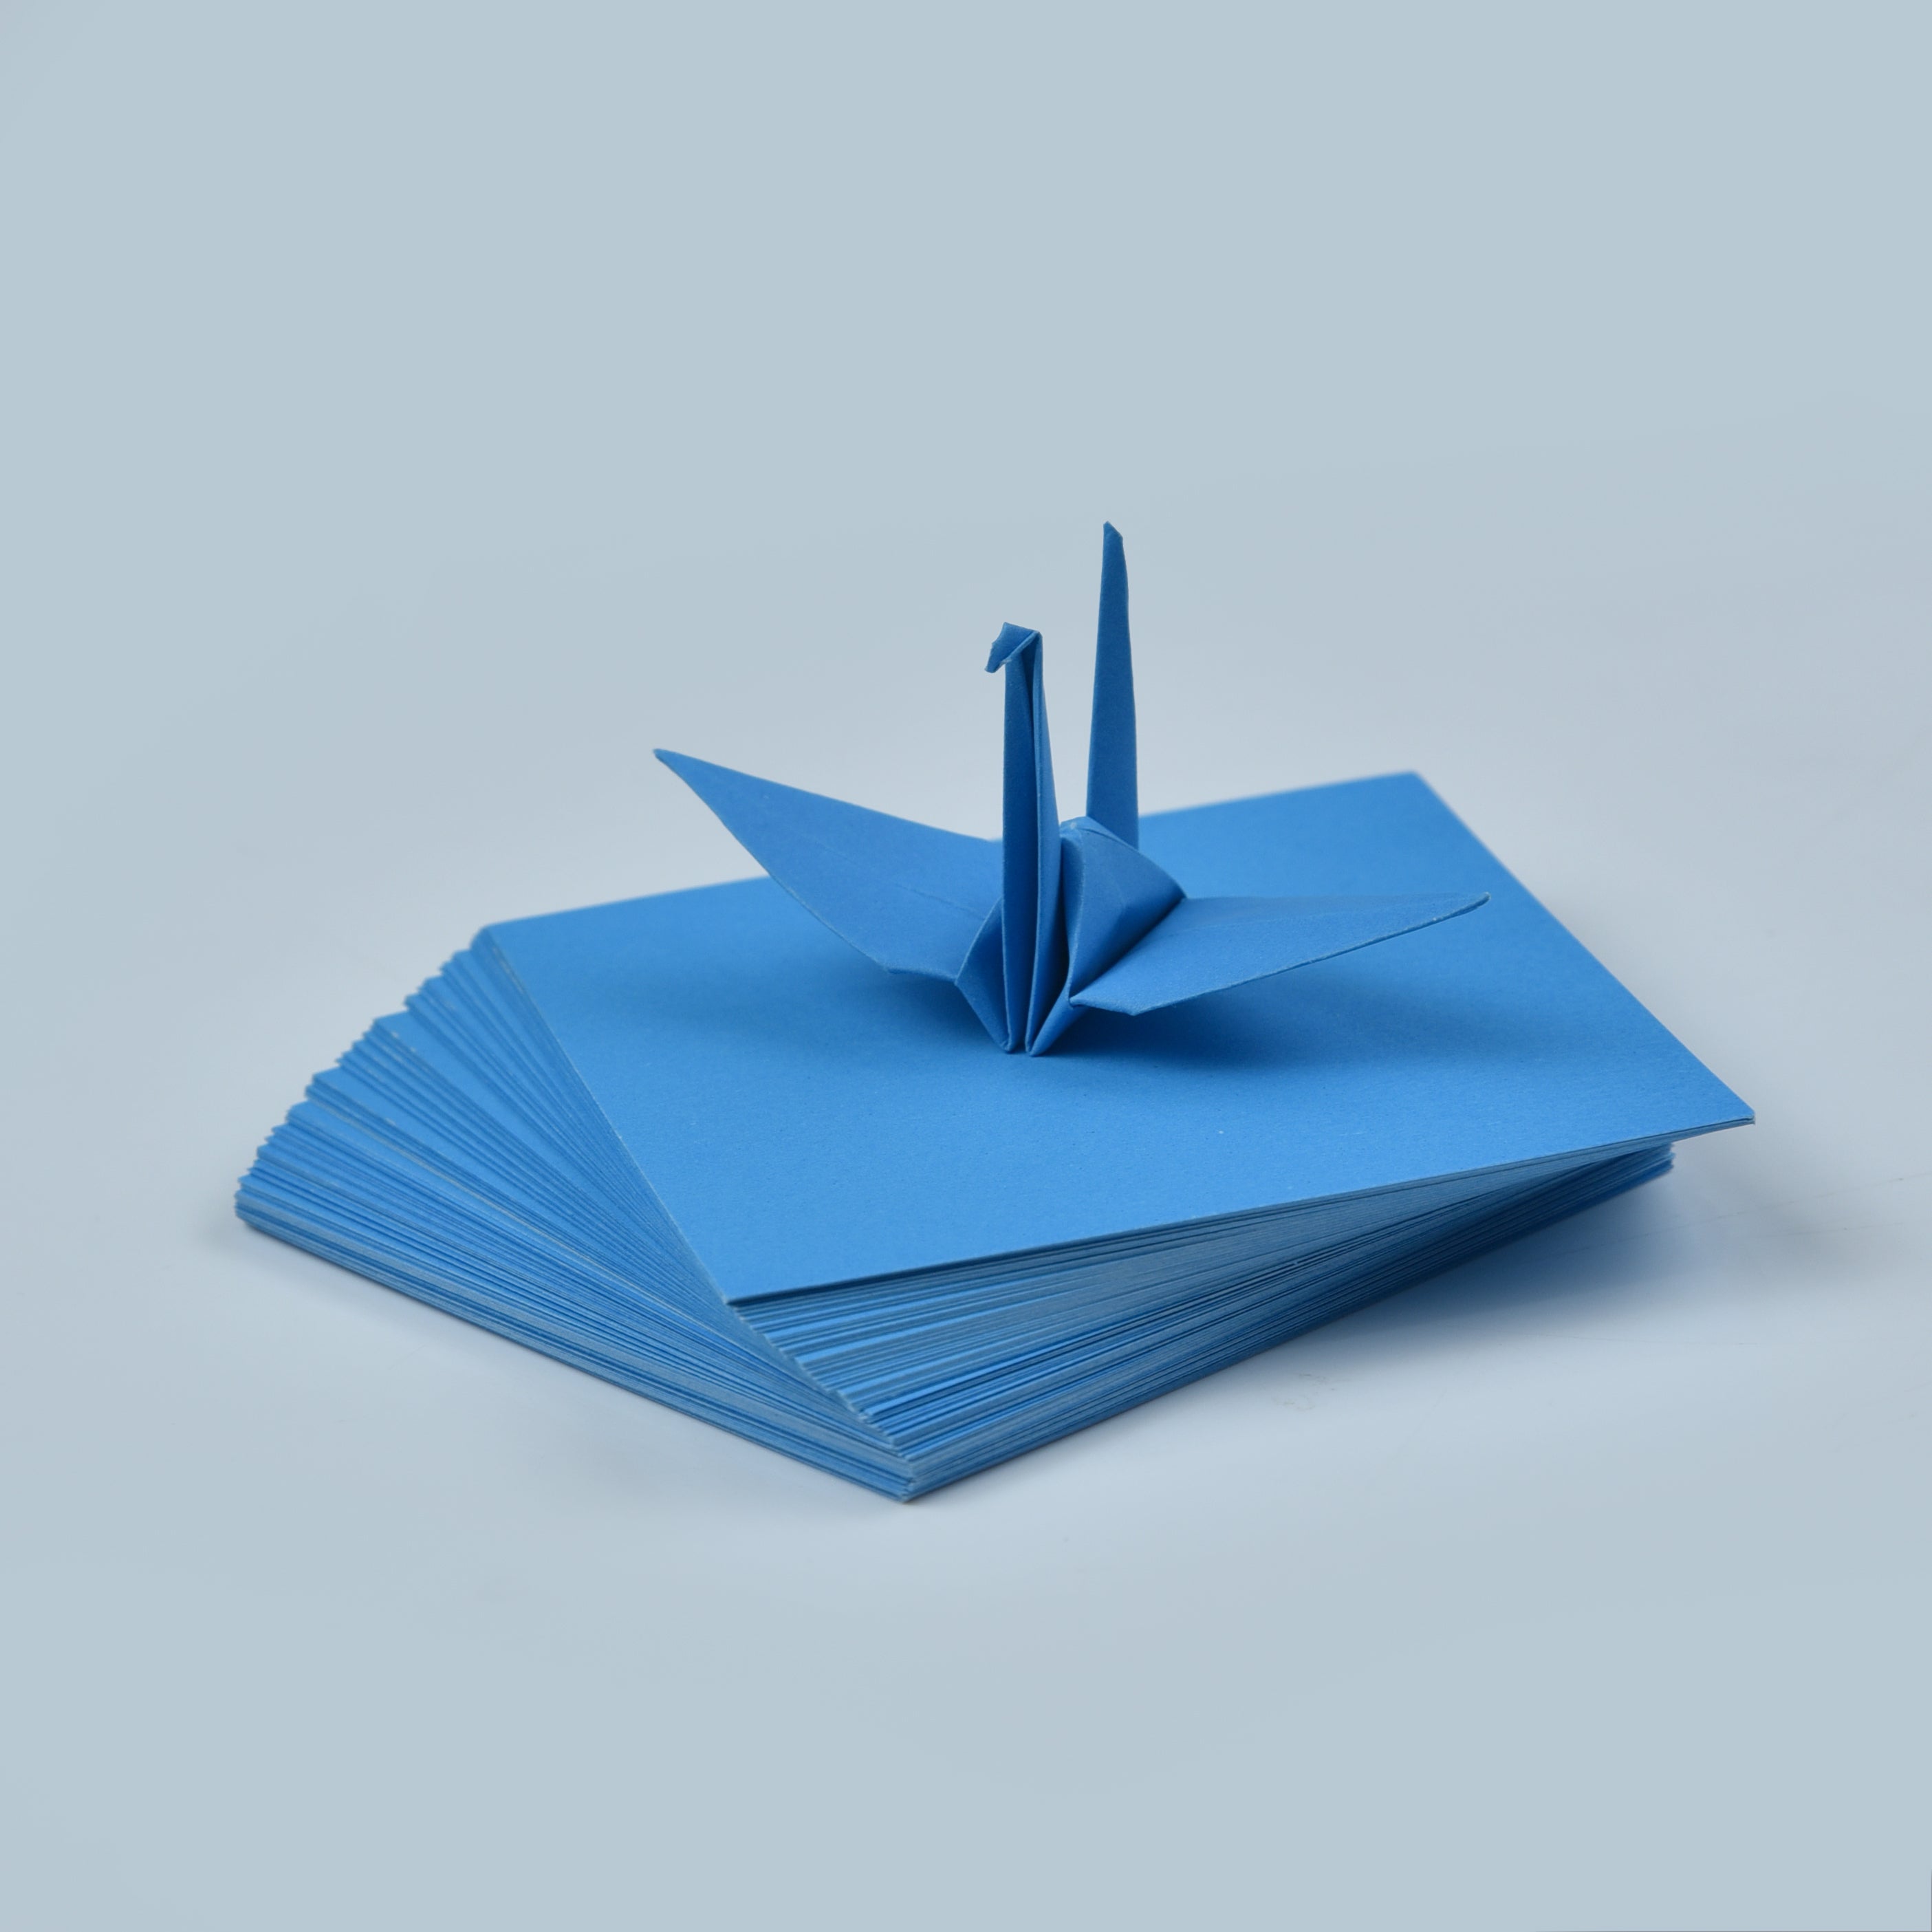 100 fogli di carta origami - 3x3 pollici - Confezione di carta quadrata per piegare, gru origami e decorazioni - S18